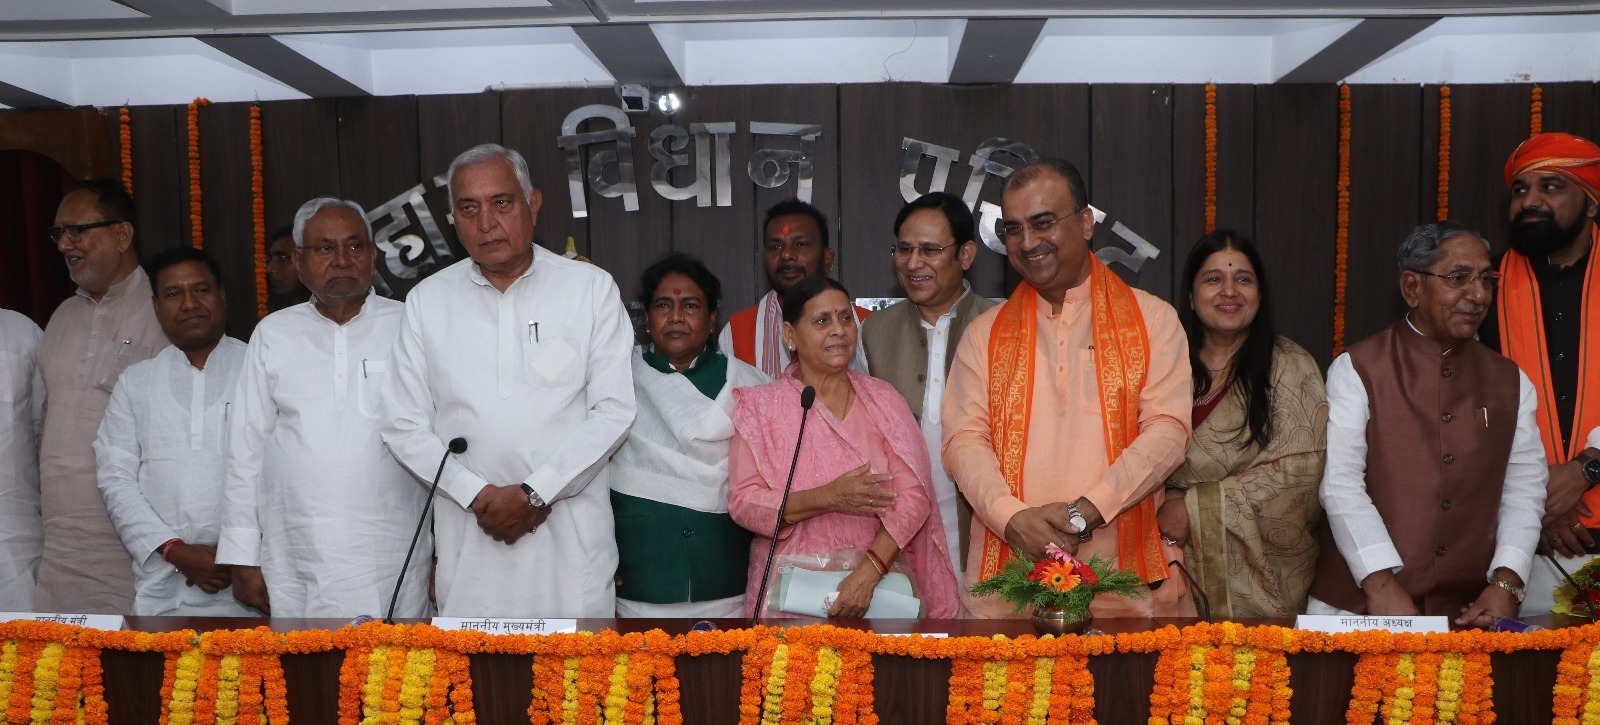 मुख्यमंत्री नीतीश कुमार के साथ दो मंत्री व पूर्व मुख्यमंत्री राबड़ी देवी ने भी ली शपथ